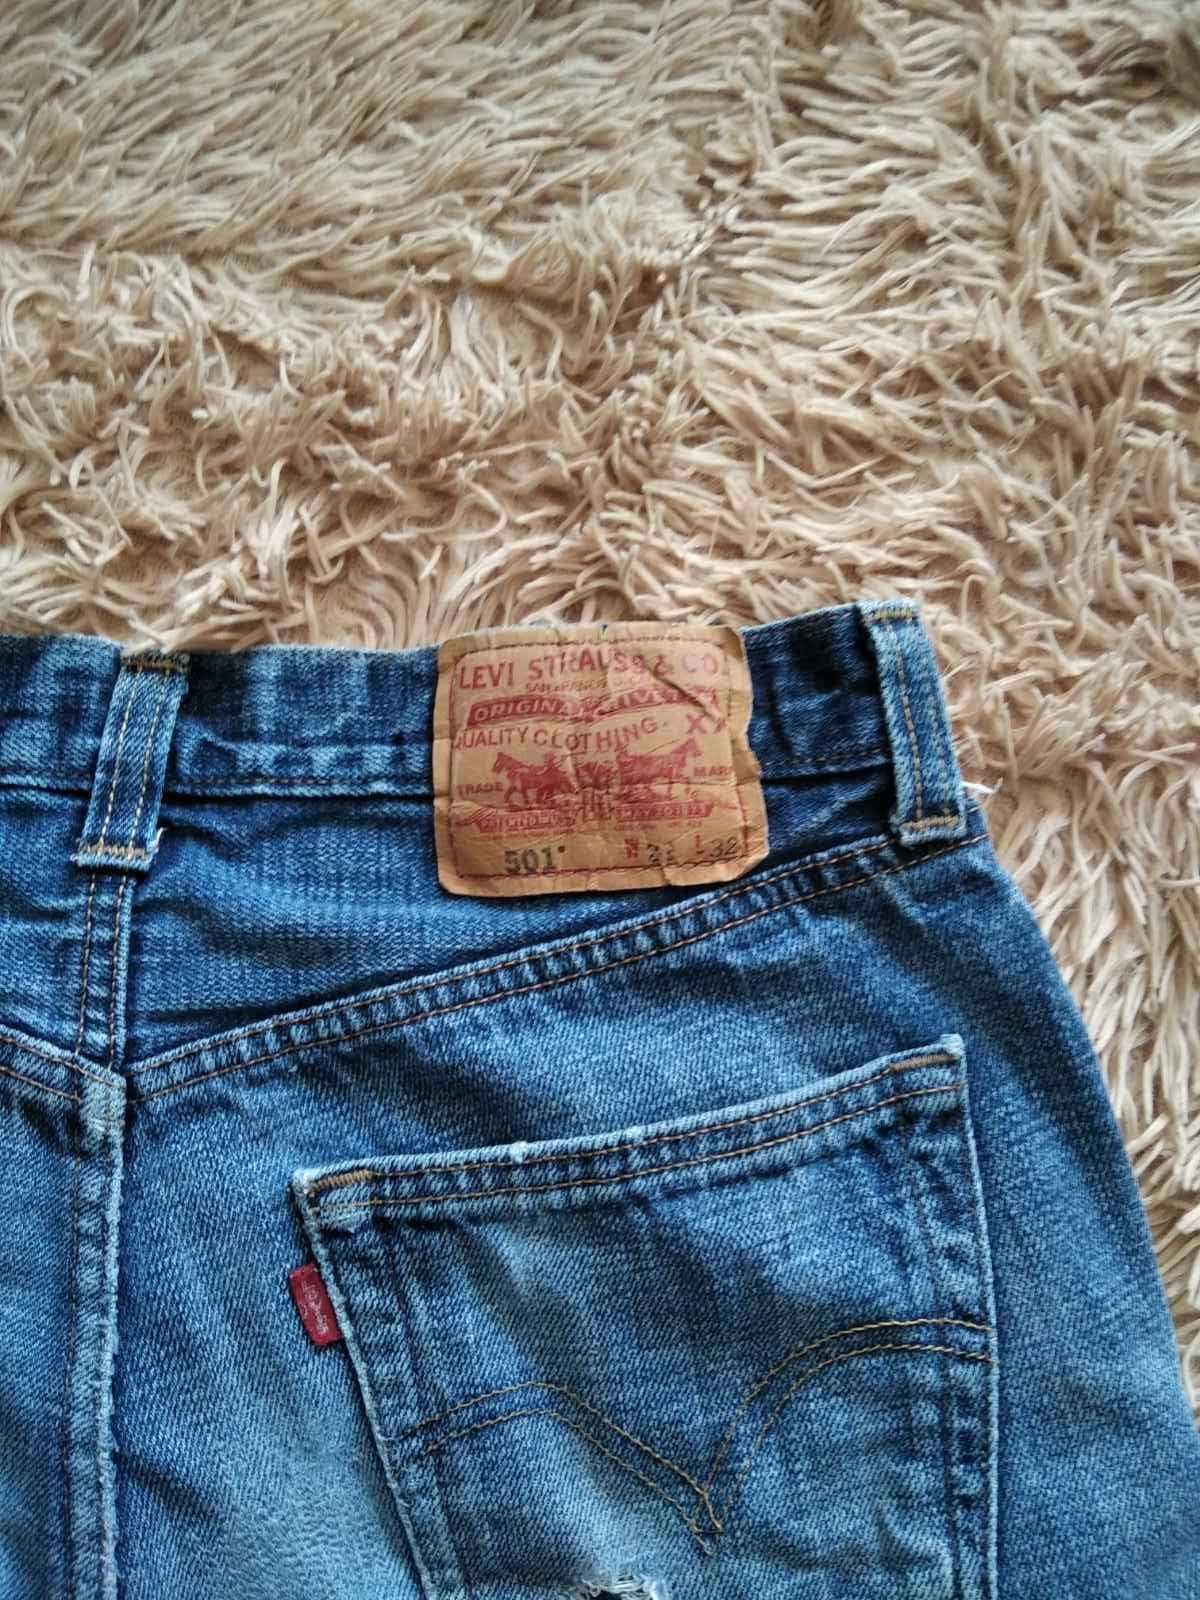 Шорты джинсовые  Levis original 501